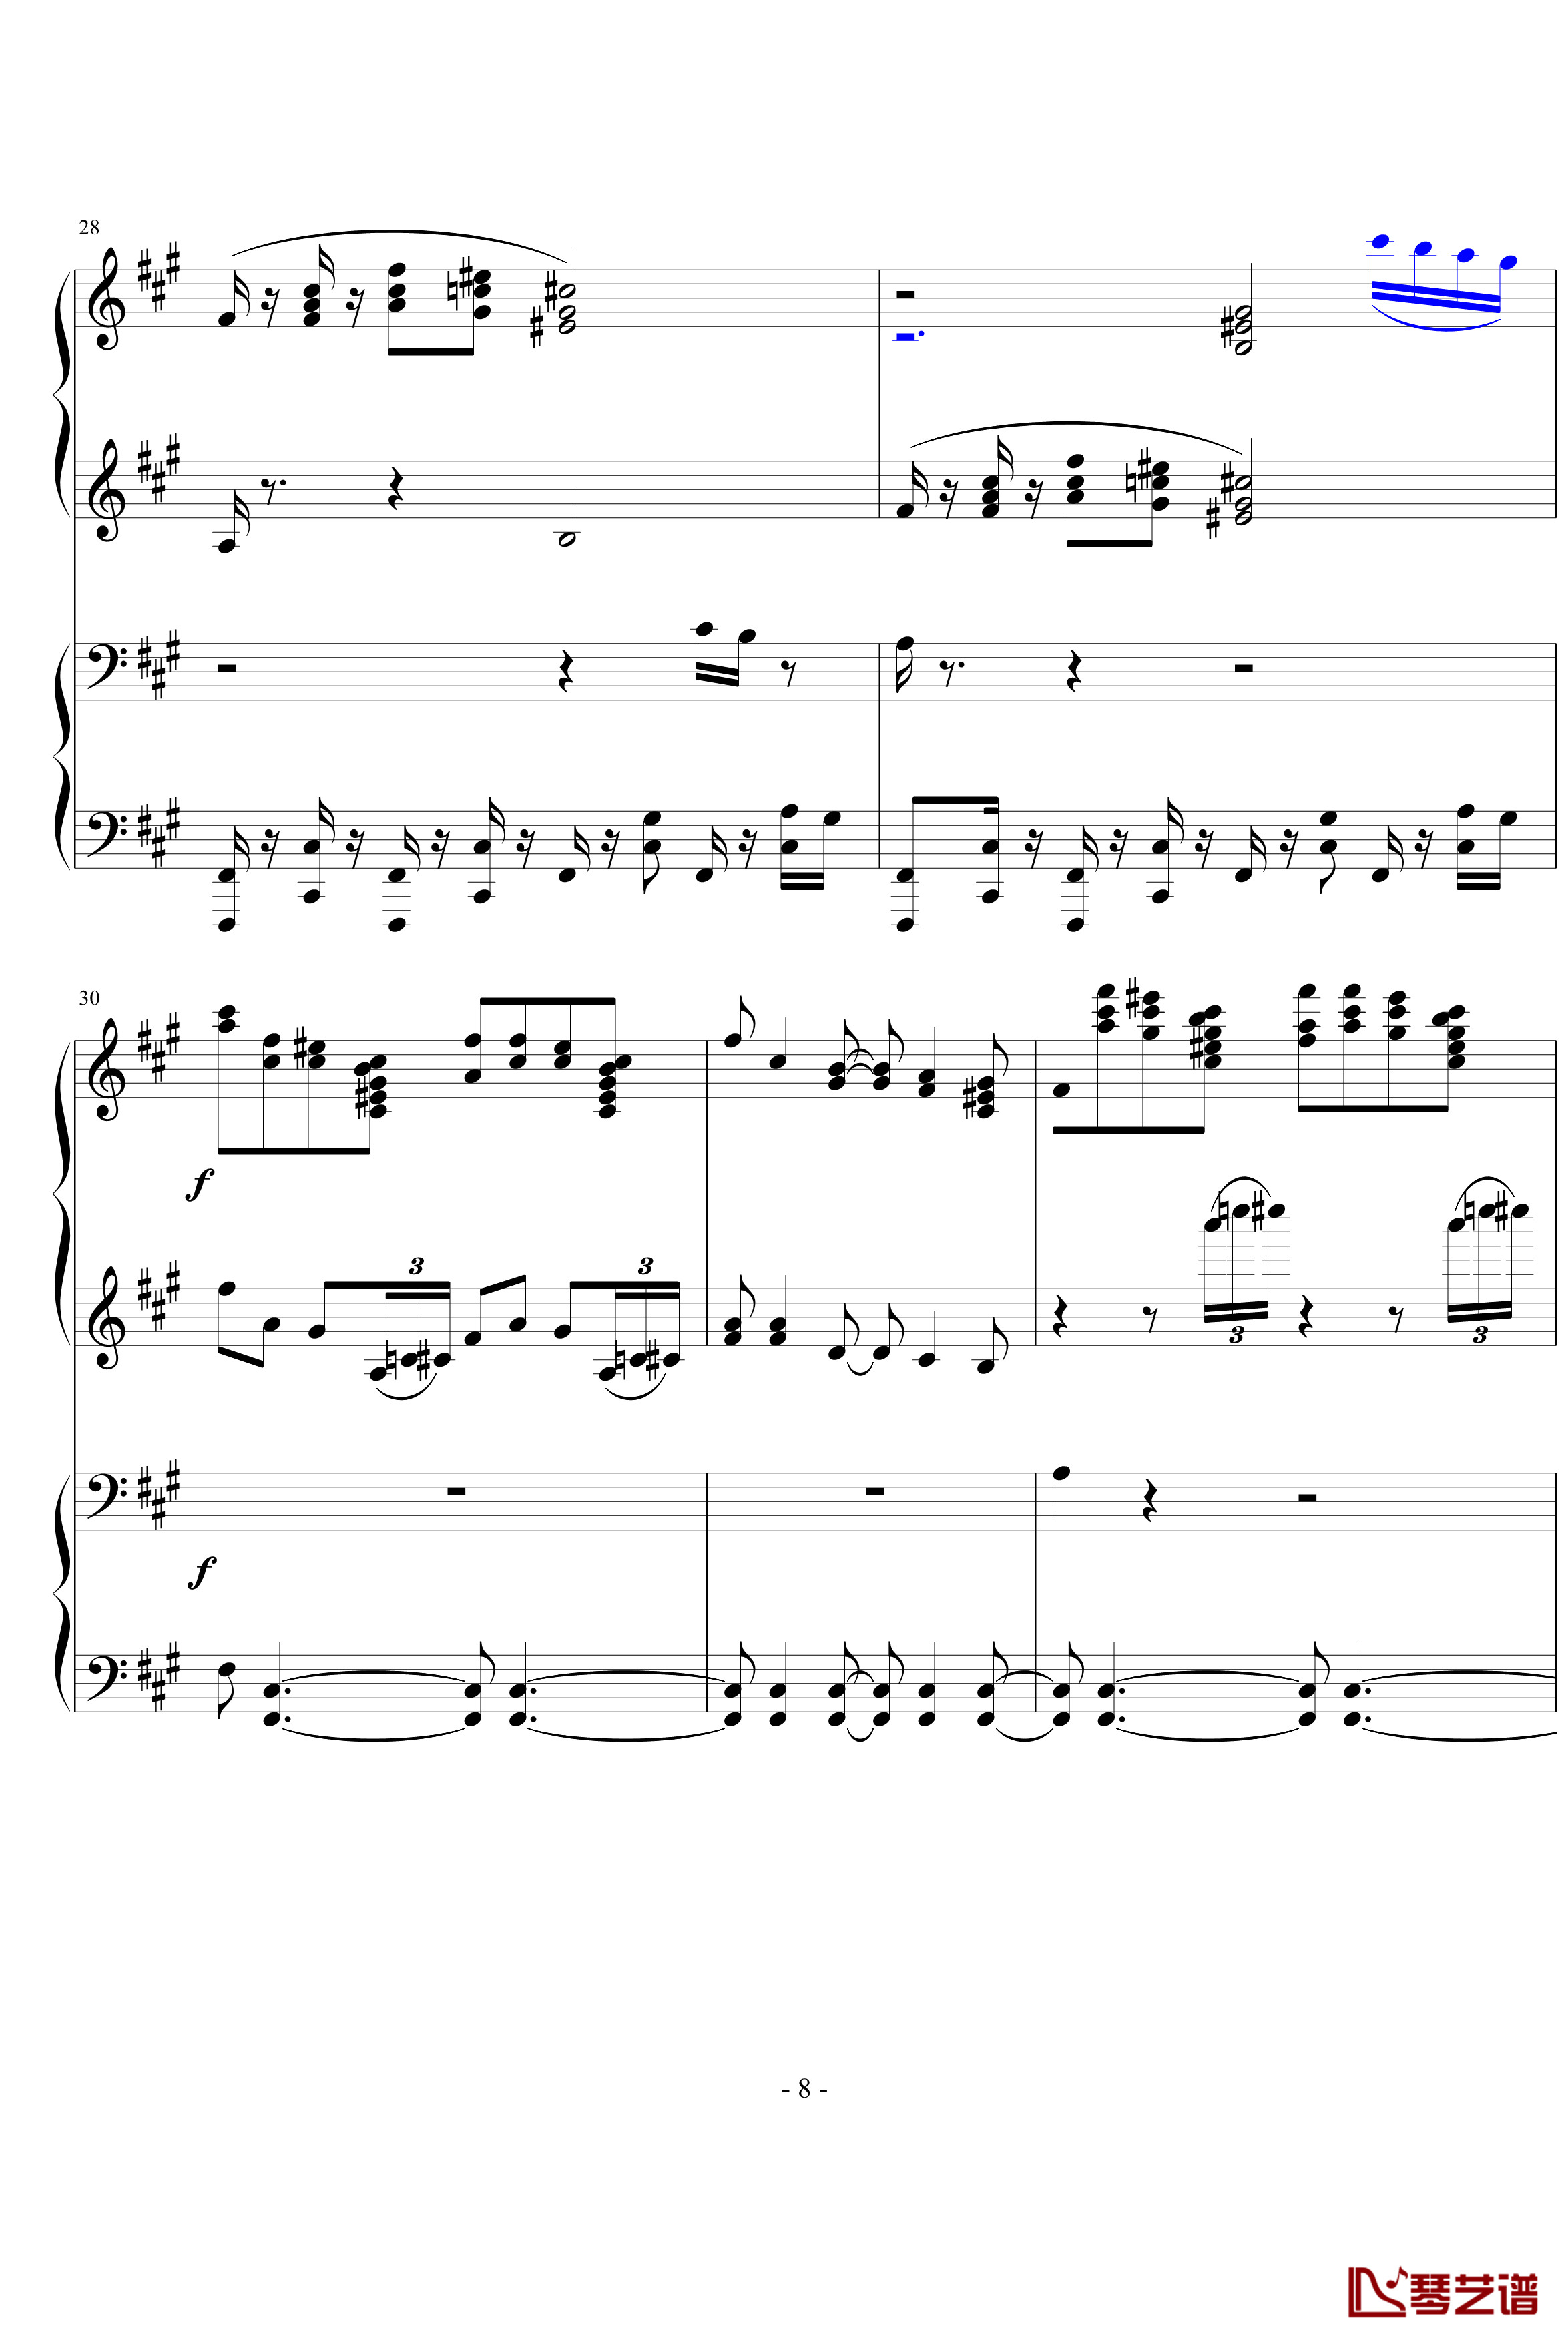 四小天鹅舞曲钢琴谱-柴科夫斯基-Peter Ilyich Tchaikovsky8